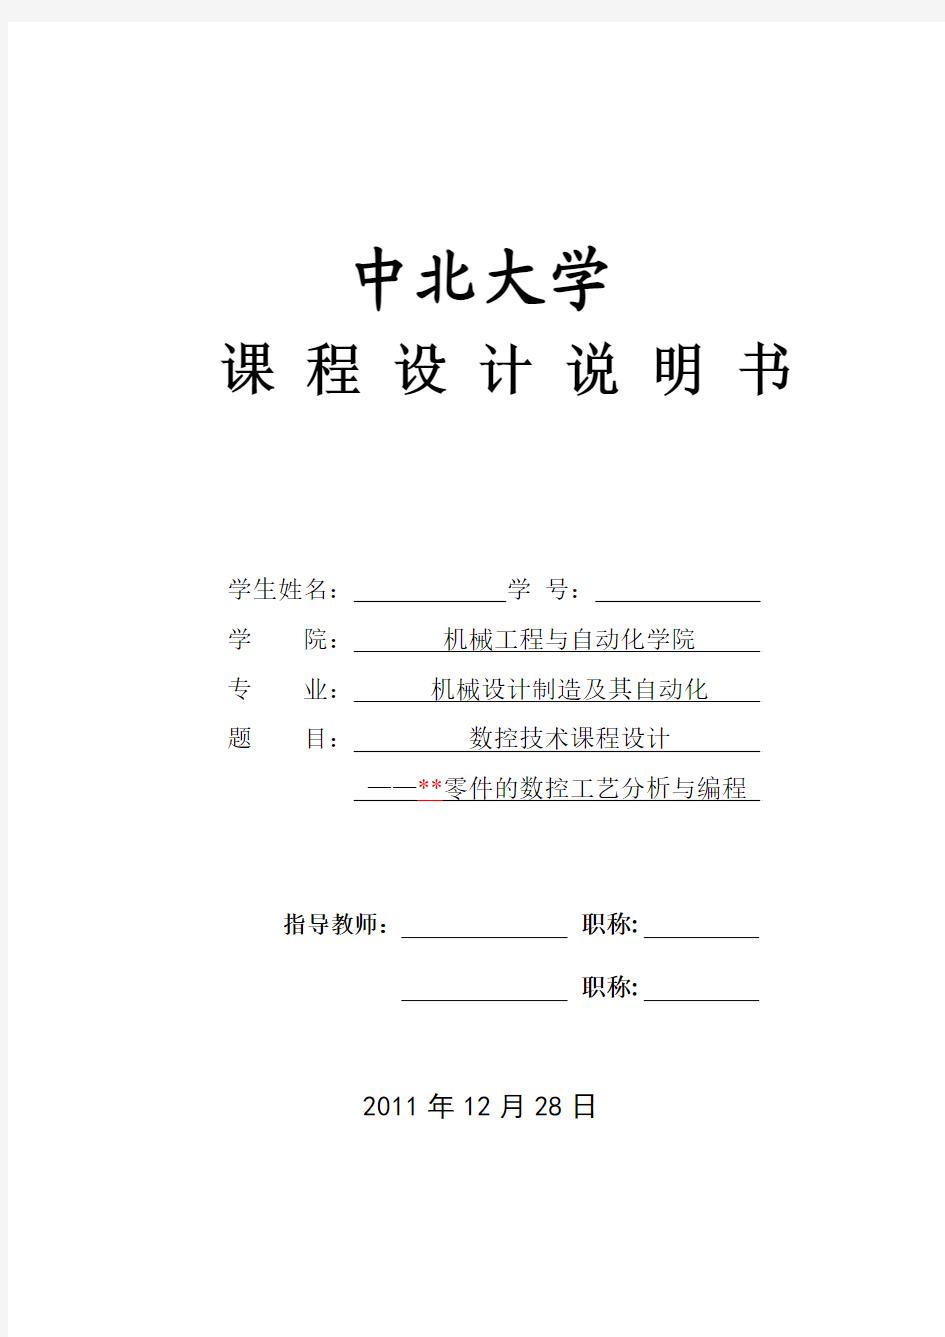 数控技术课程设计任务书(编程部分-赵丽琴)